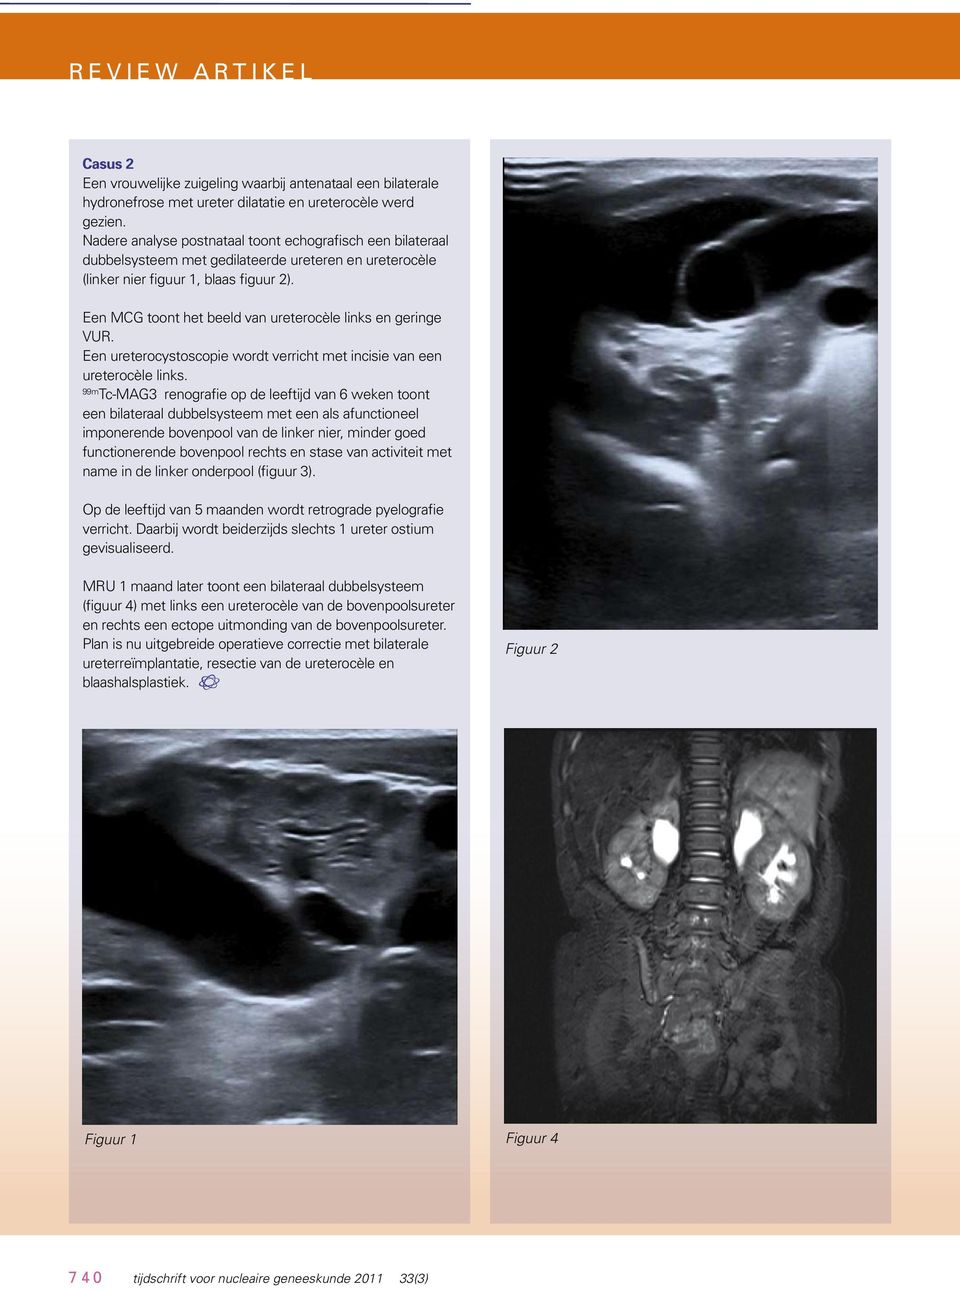 Een MCG toont het beeld van ureterocèle links en geringe VUR. Een ureterocystoscopie wordt verricht met incisie van een ureterocèle links.